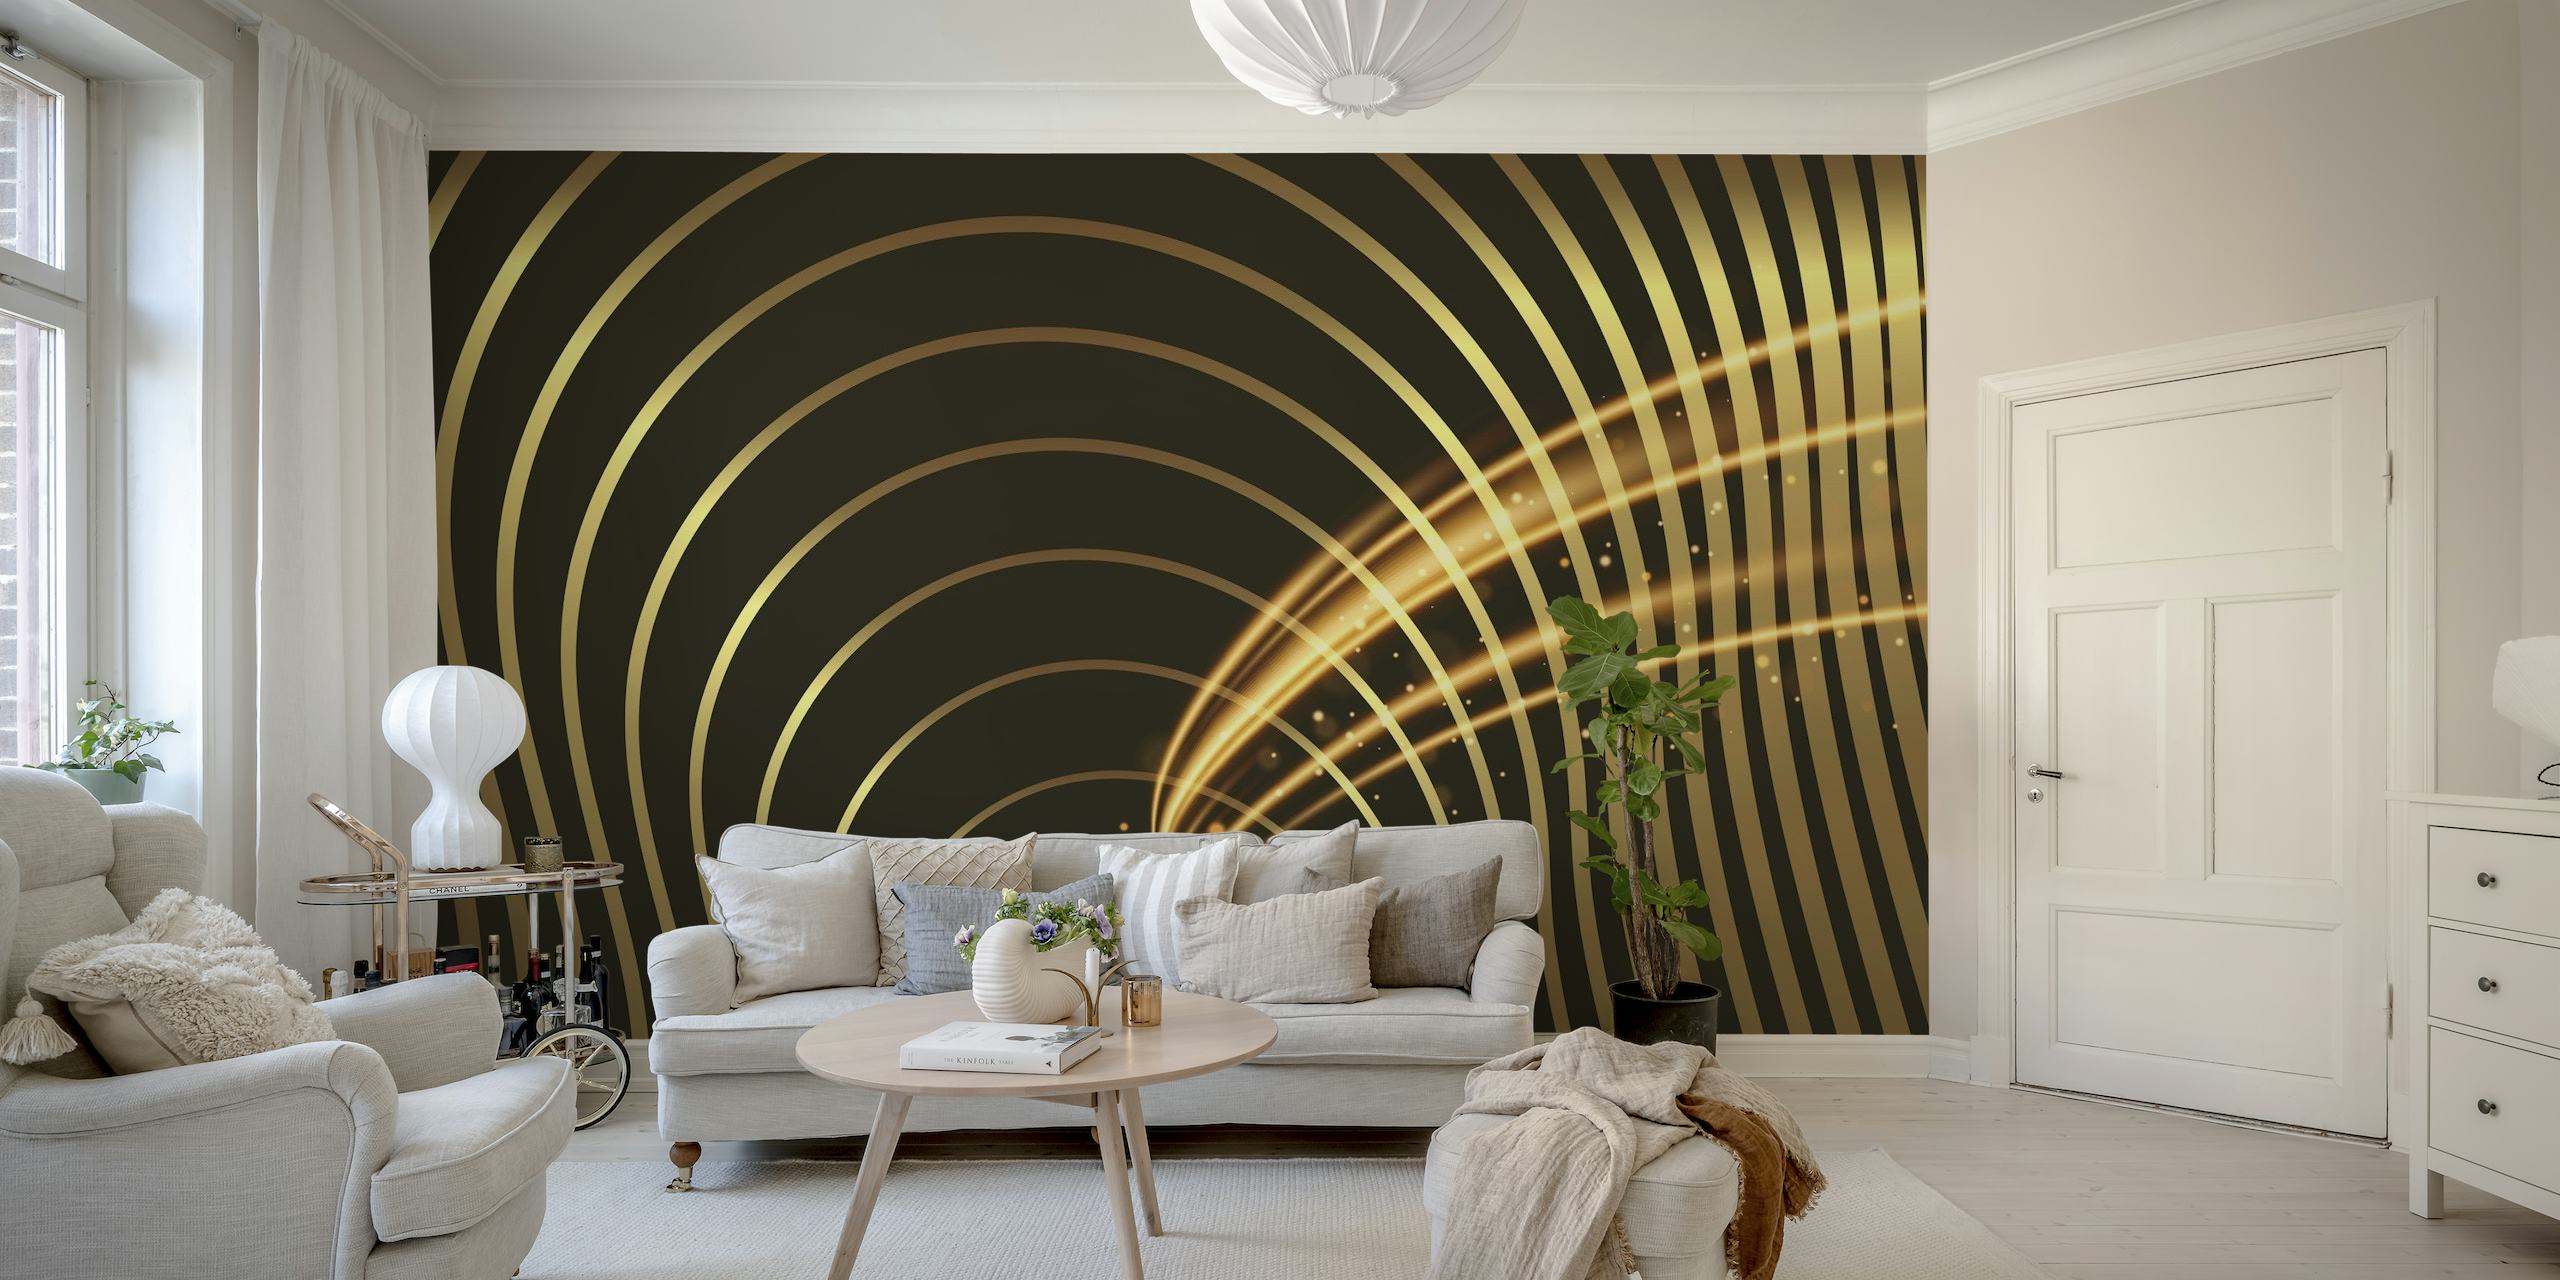 Design murale con spirali dorate